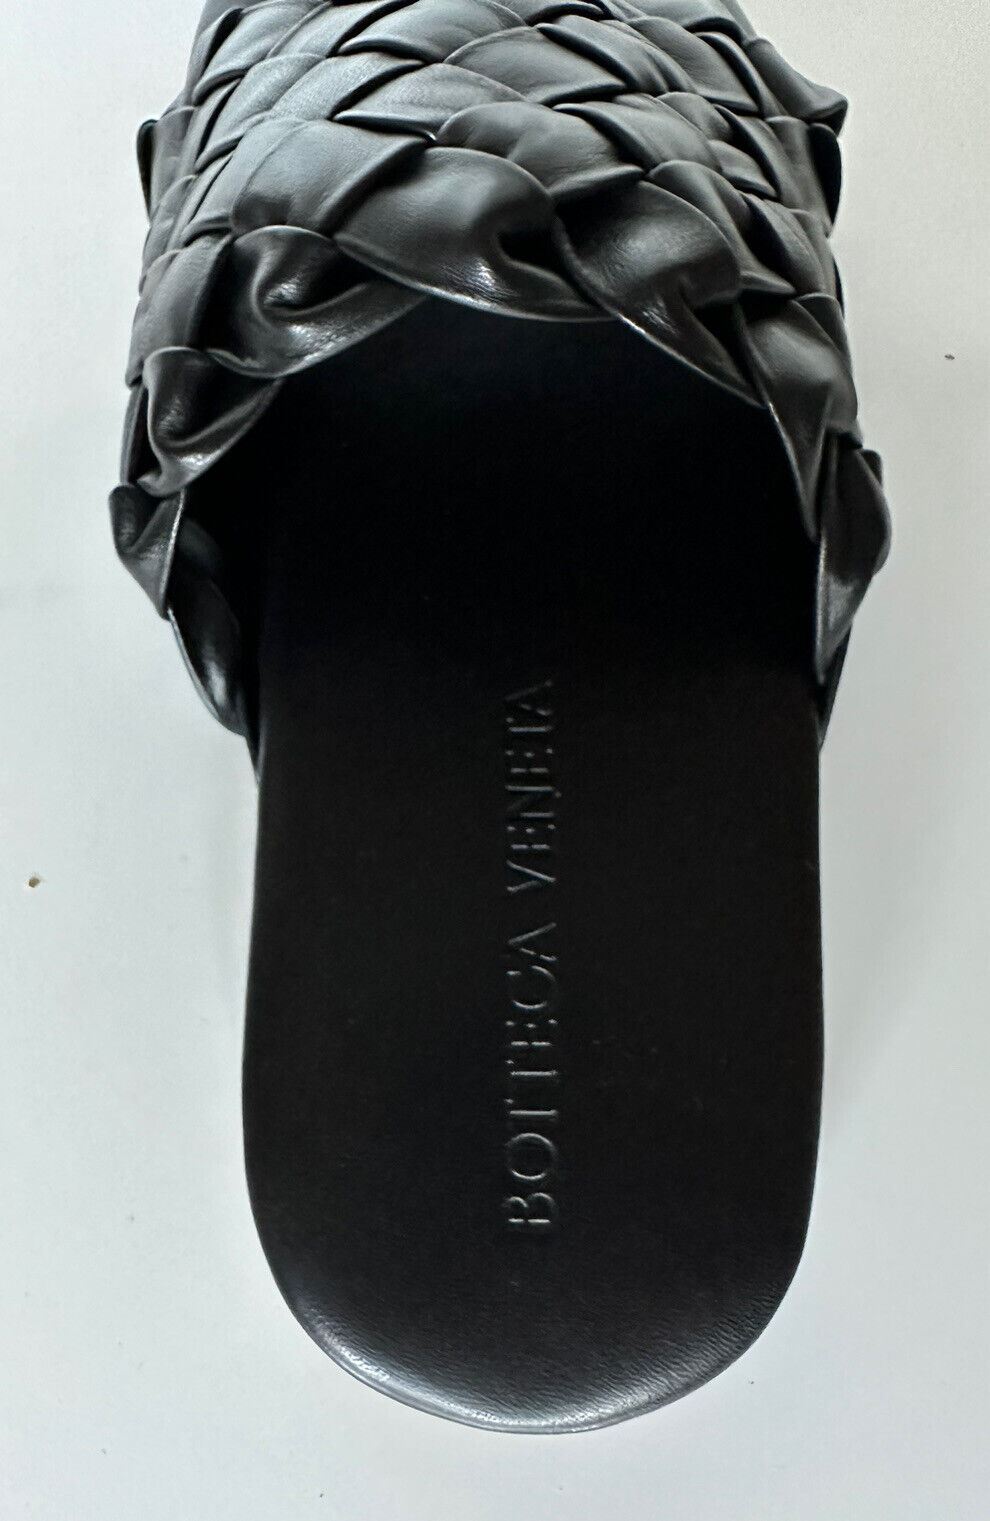 Мужские кожаные сандалии Intrecciato Bottega Veneta за 1150 долларов США, черные 9 США 620298 IT